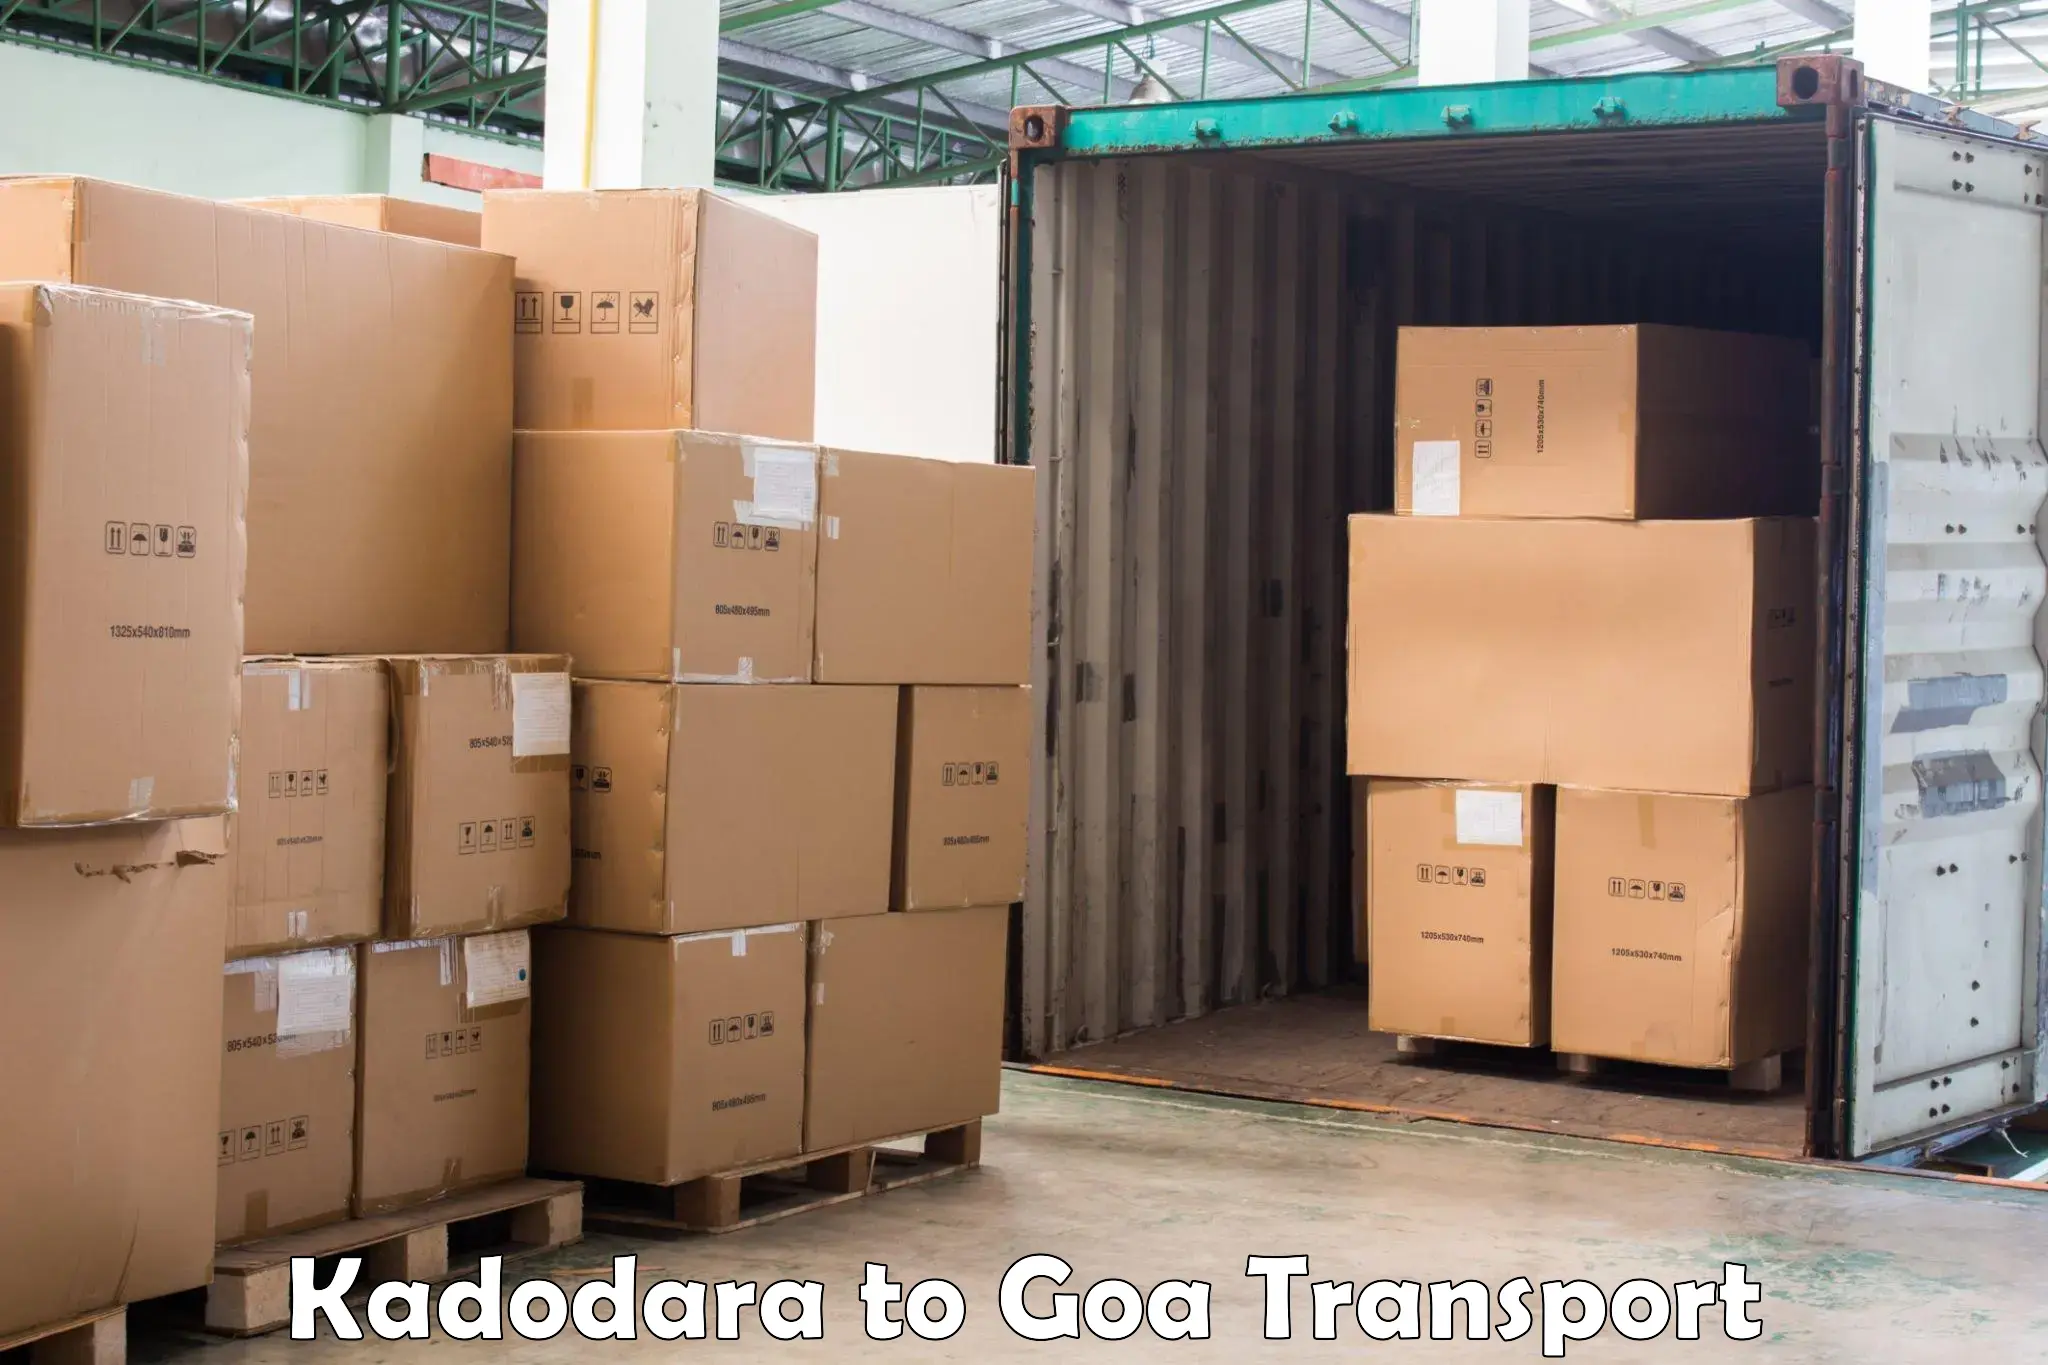 Express transport services Kadodara to Bicholim